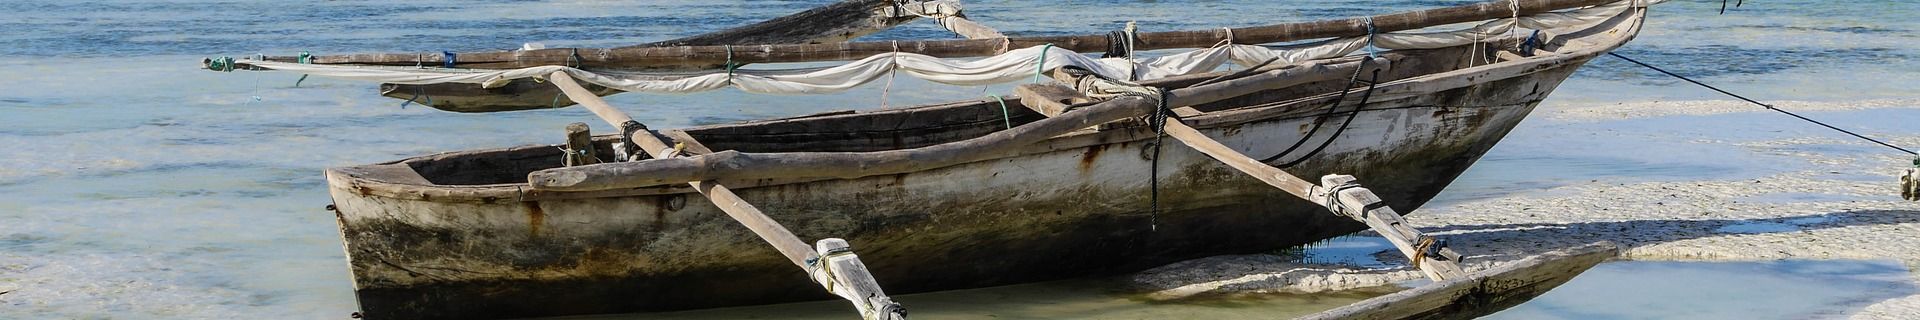 Traditional Fishing Boat in Zanzibar